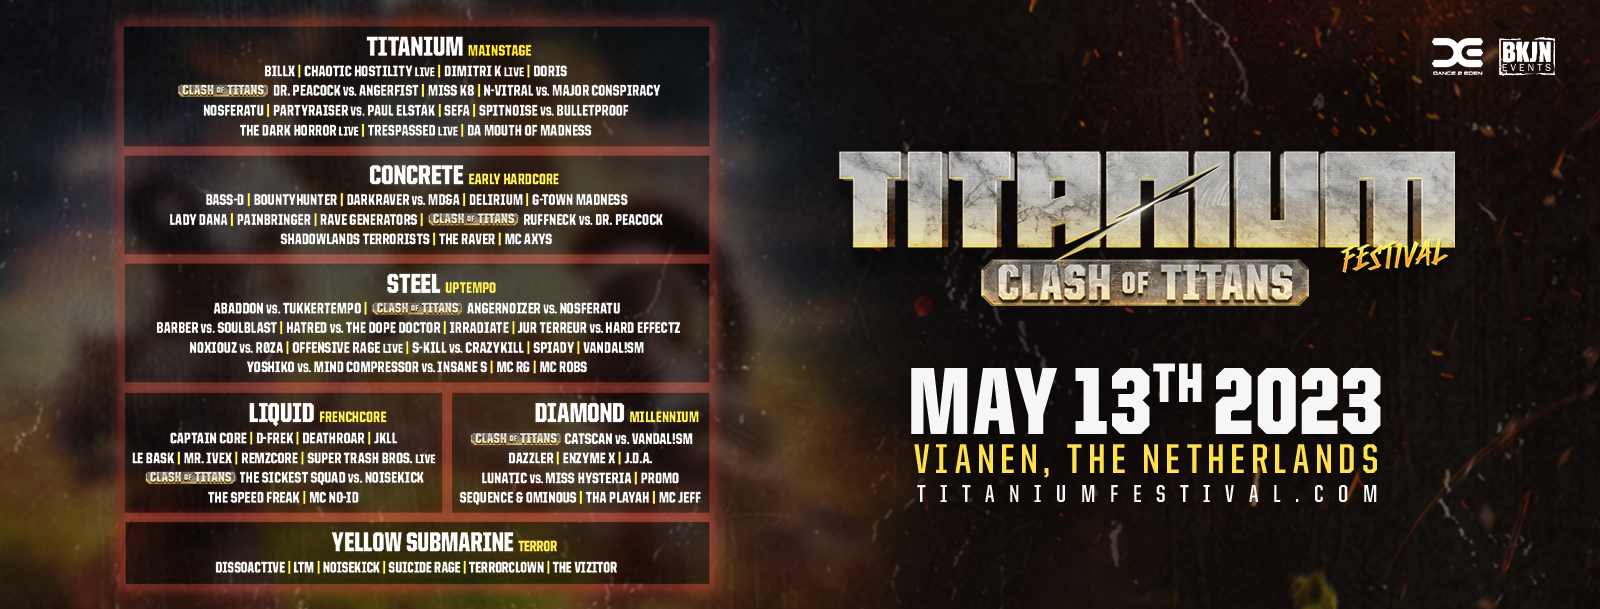 Titanium Festival ­ Clash of the titans